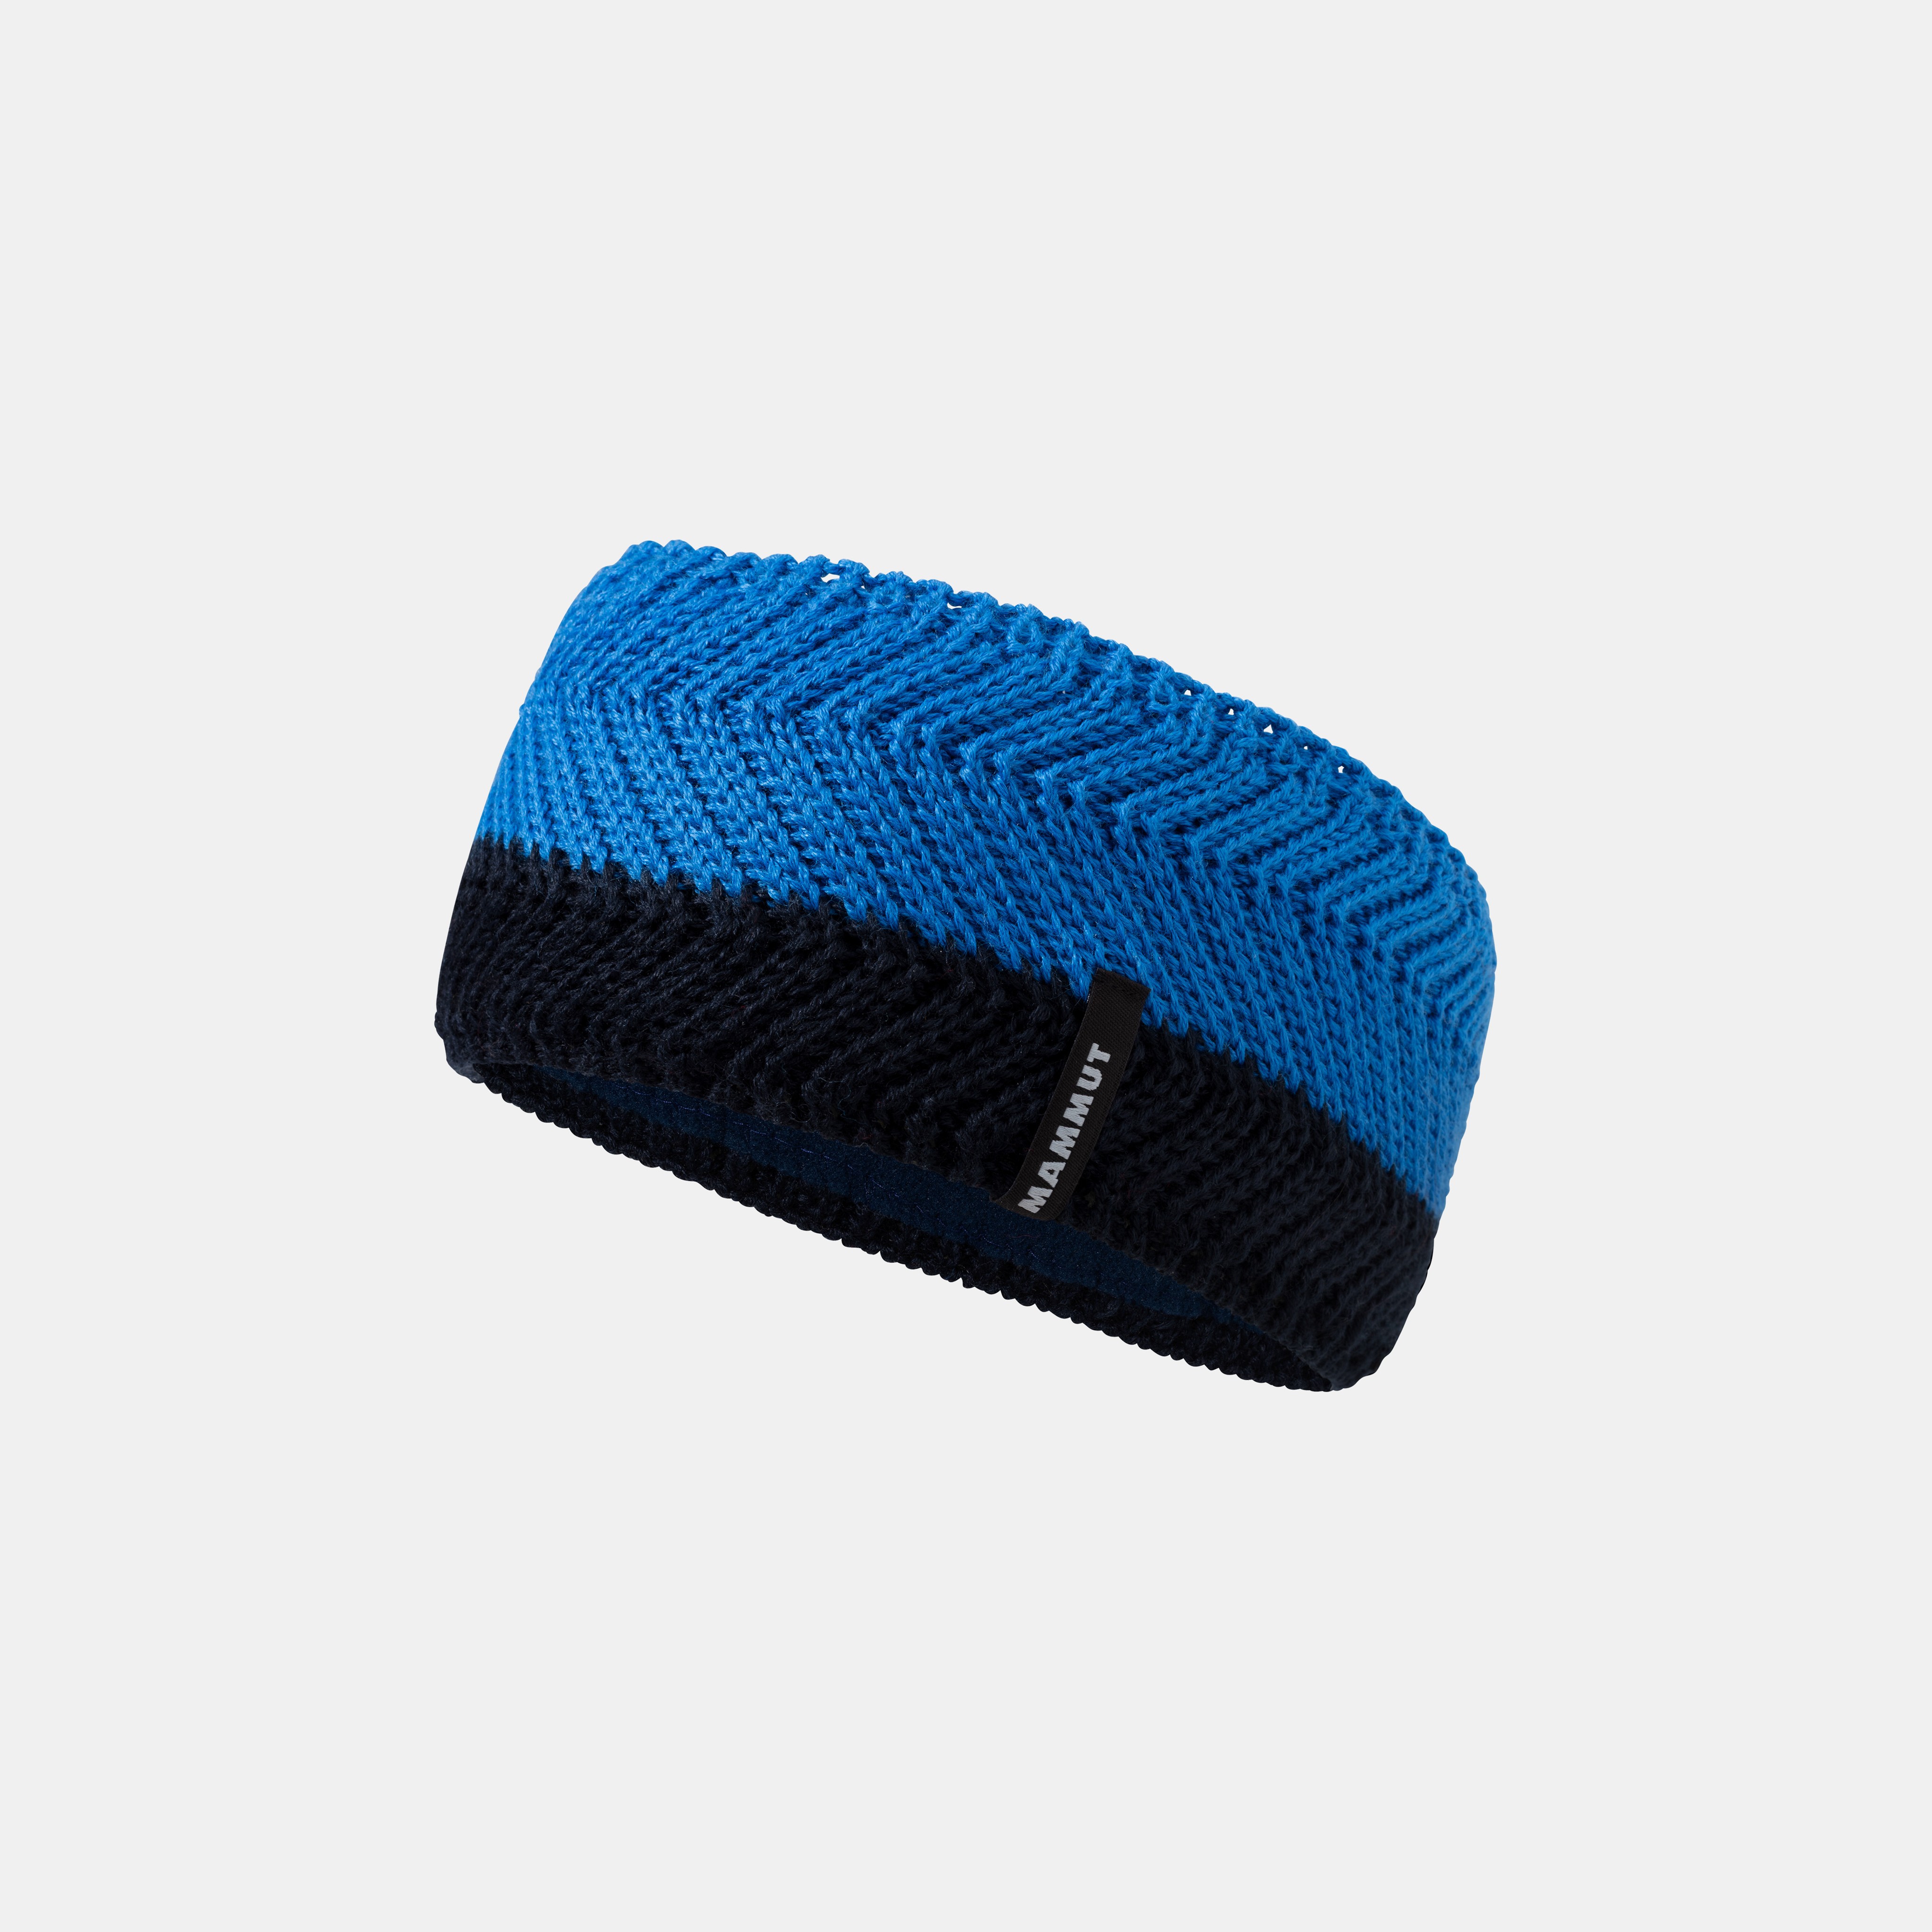 La Liste Headband product image